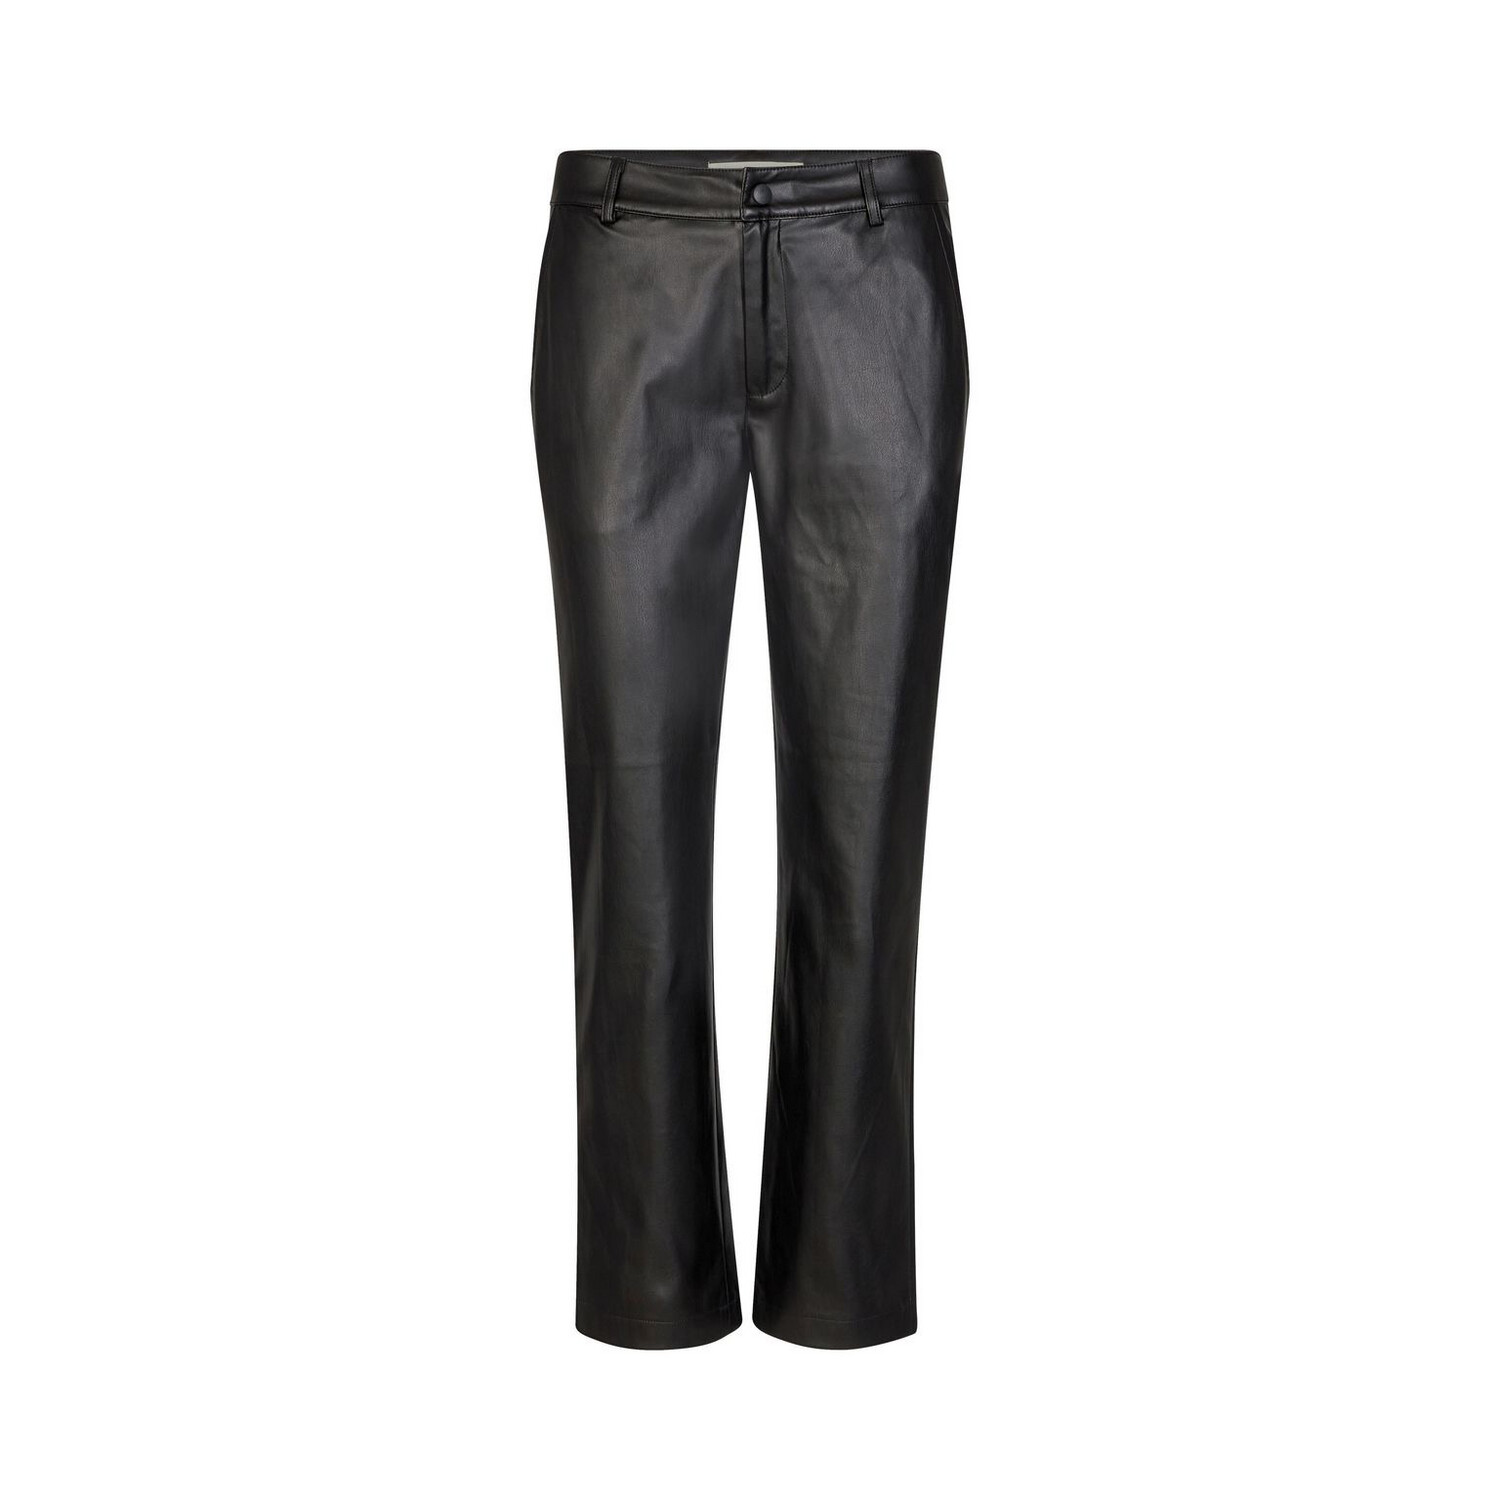 Sofie Schnoor Leather Look Trousers - Black 